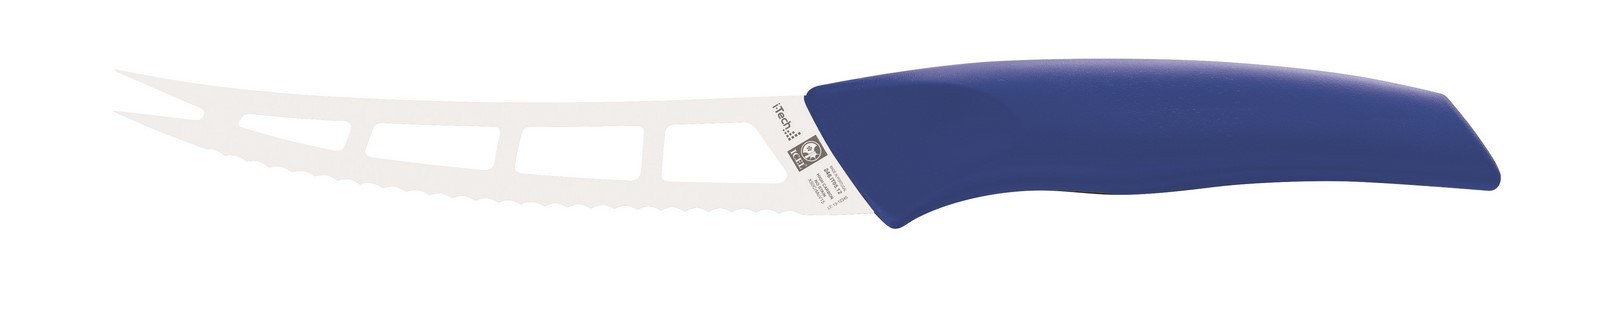 סכין גבינה I-Tech כחול